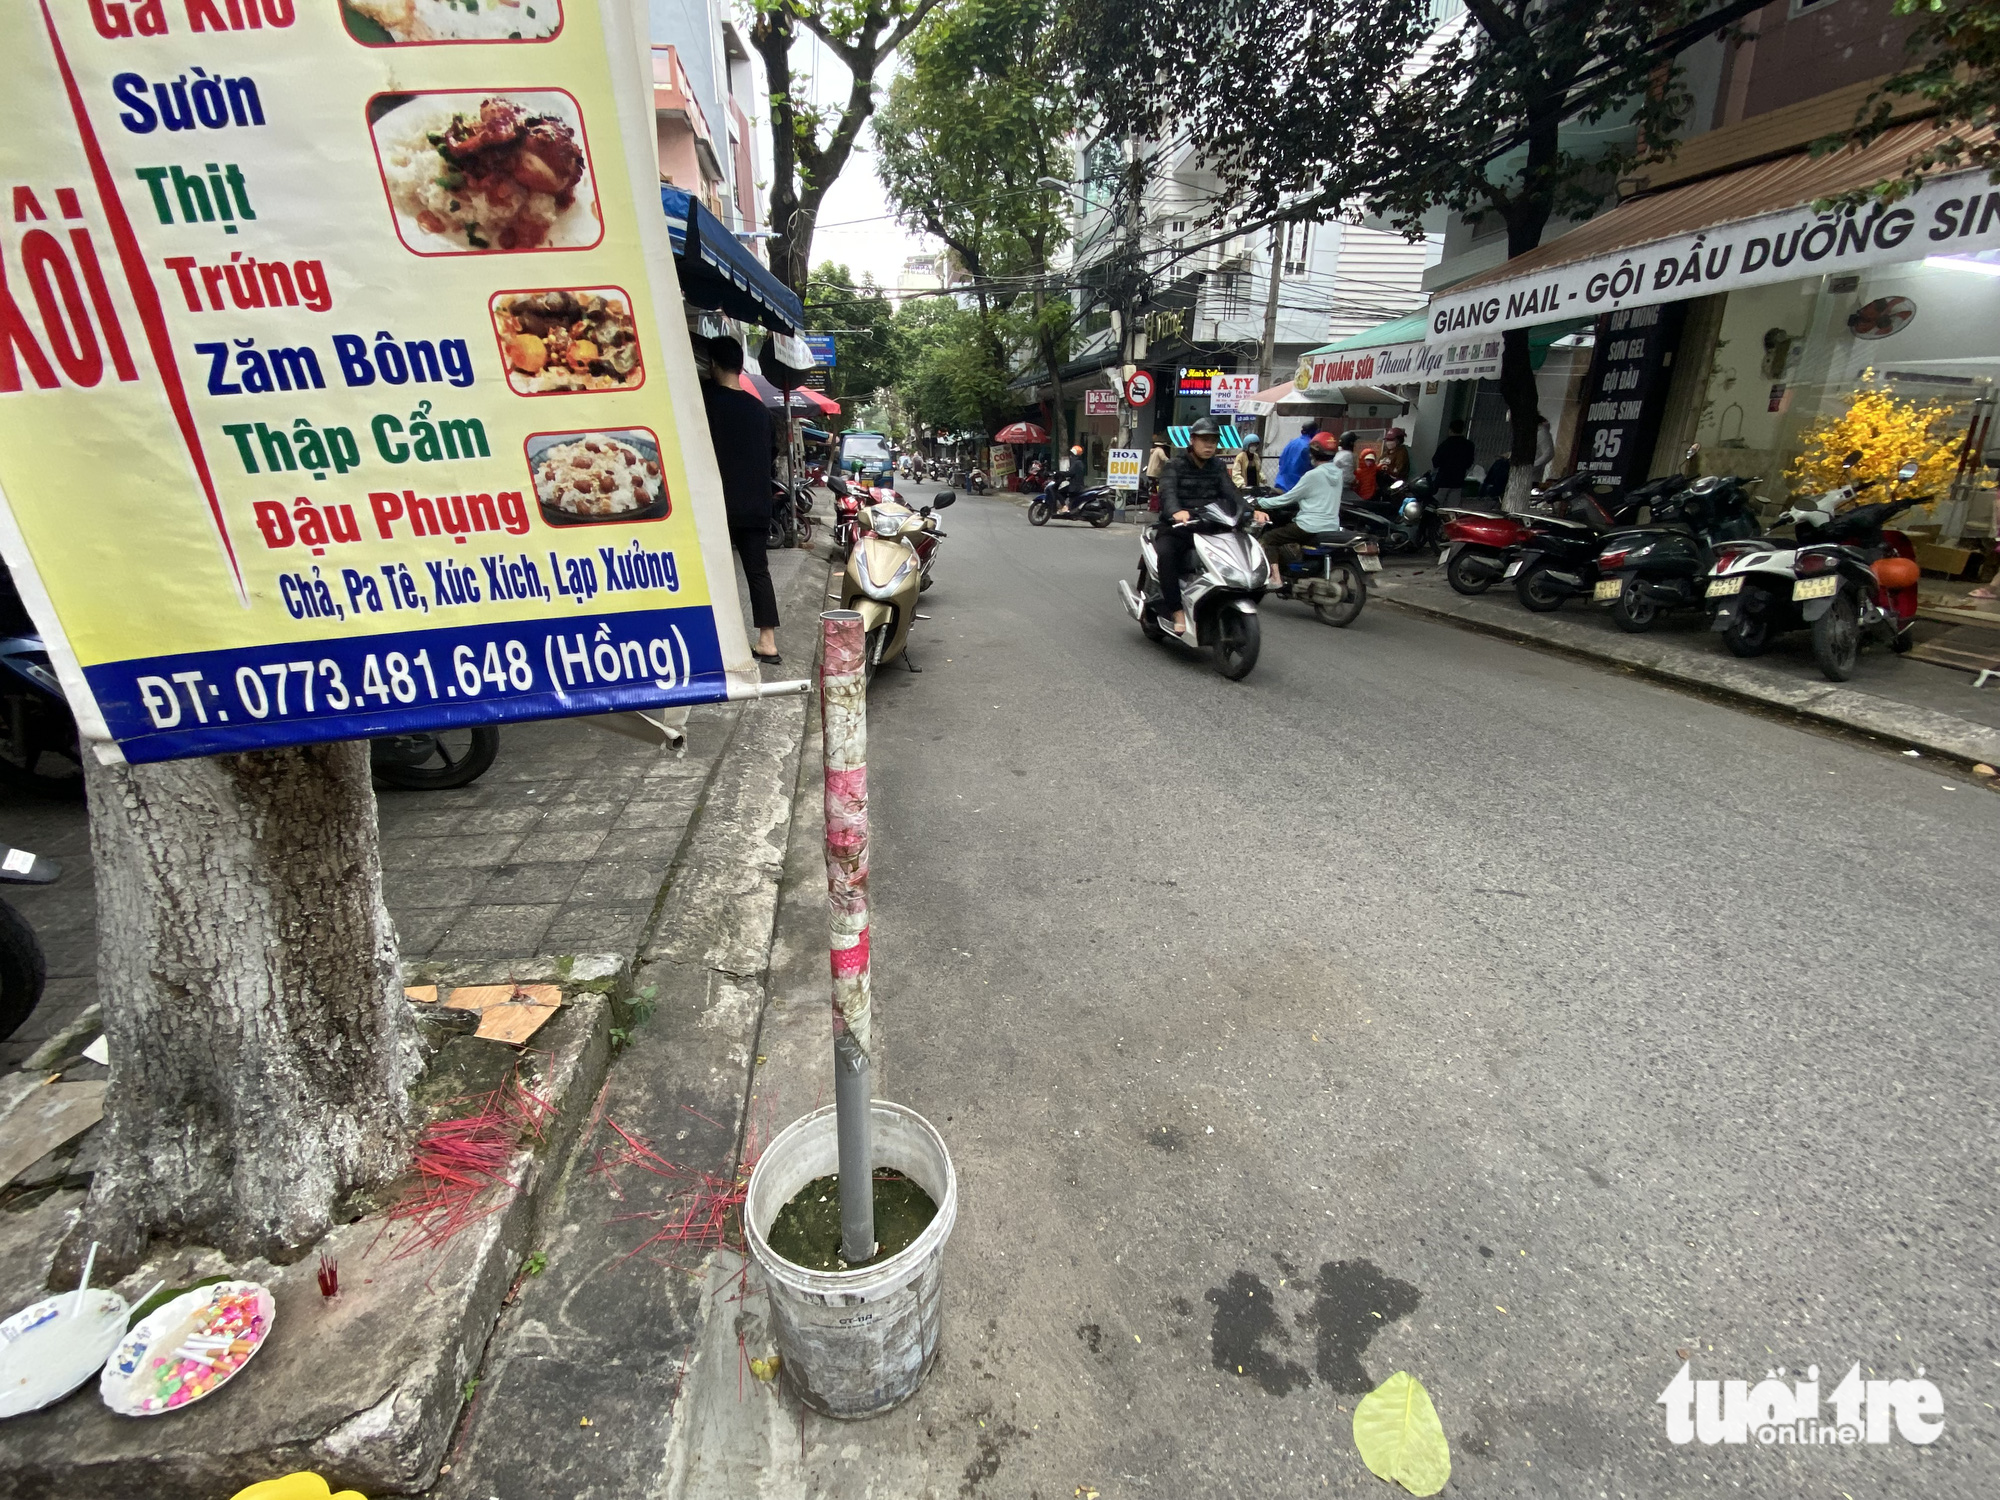 Muôn kiểu xí phần lòng đường để cản trở đậu ô tô ở Đà Nẵng - Ảnh 1.